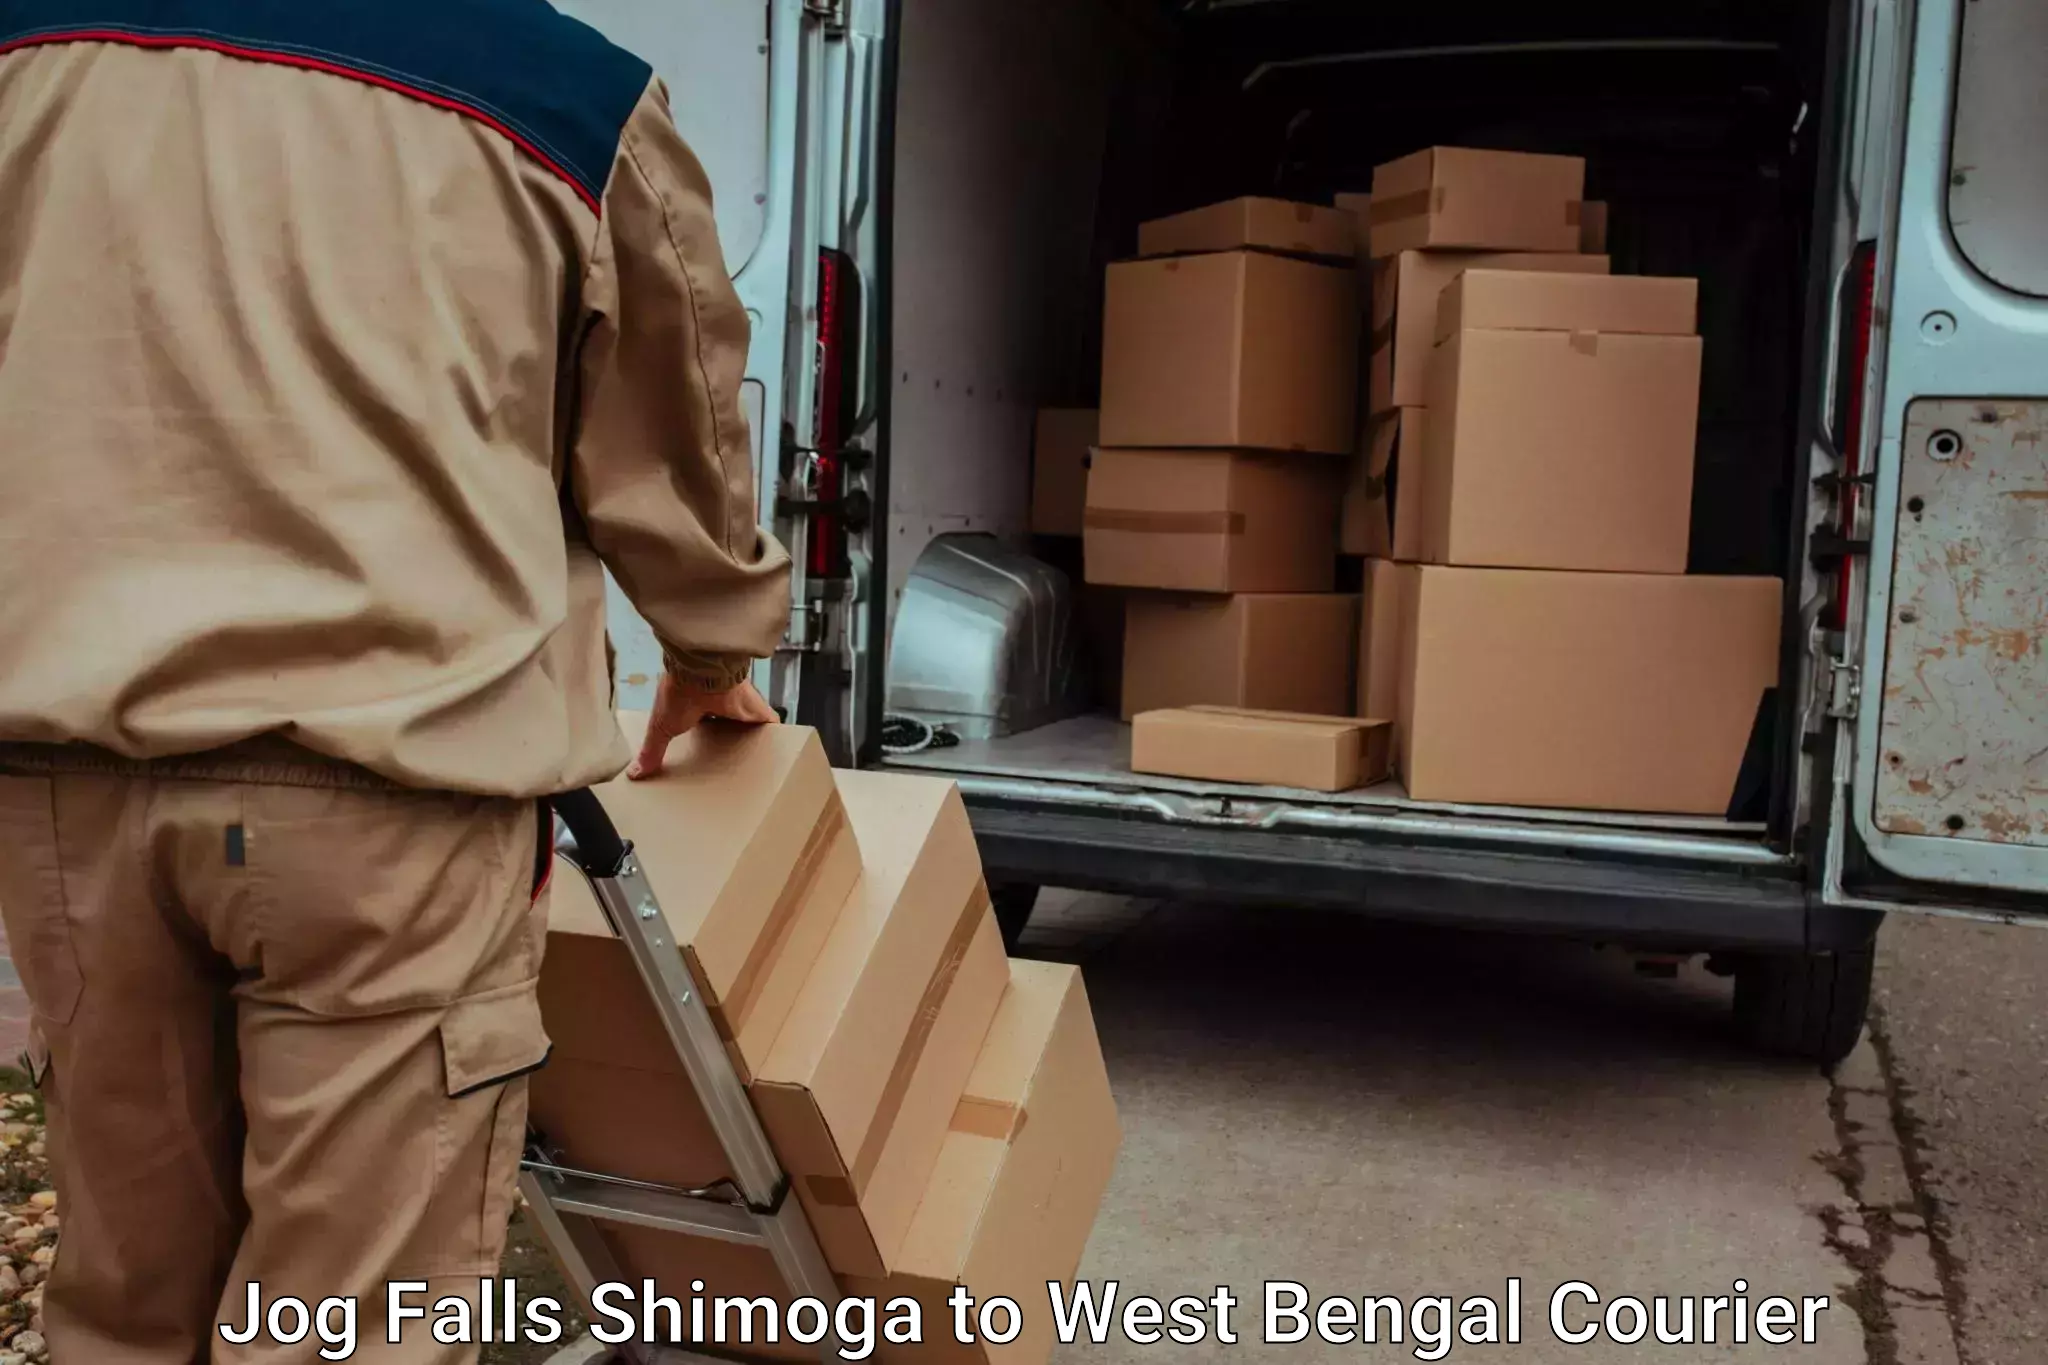 Baggage shipping experts Jog Falls Shimoga to Jhalong